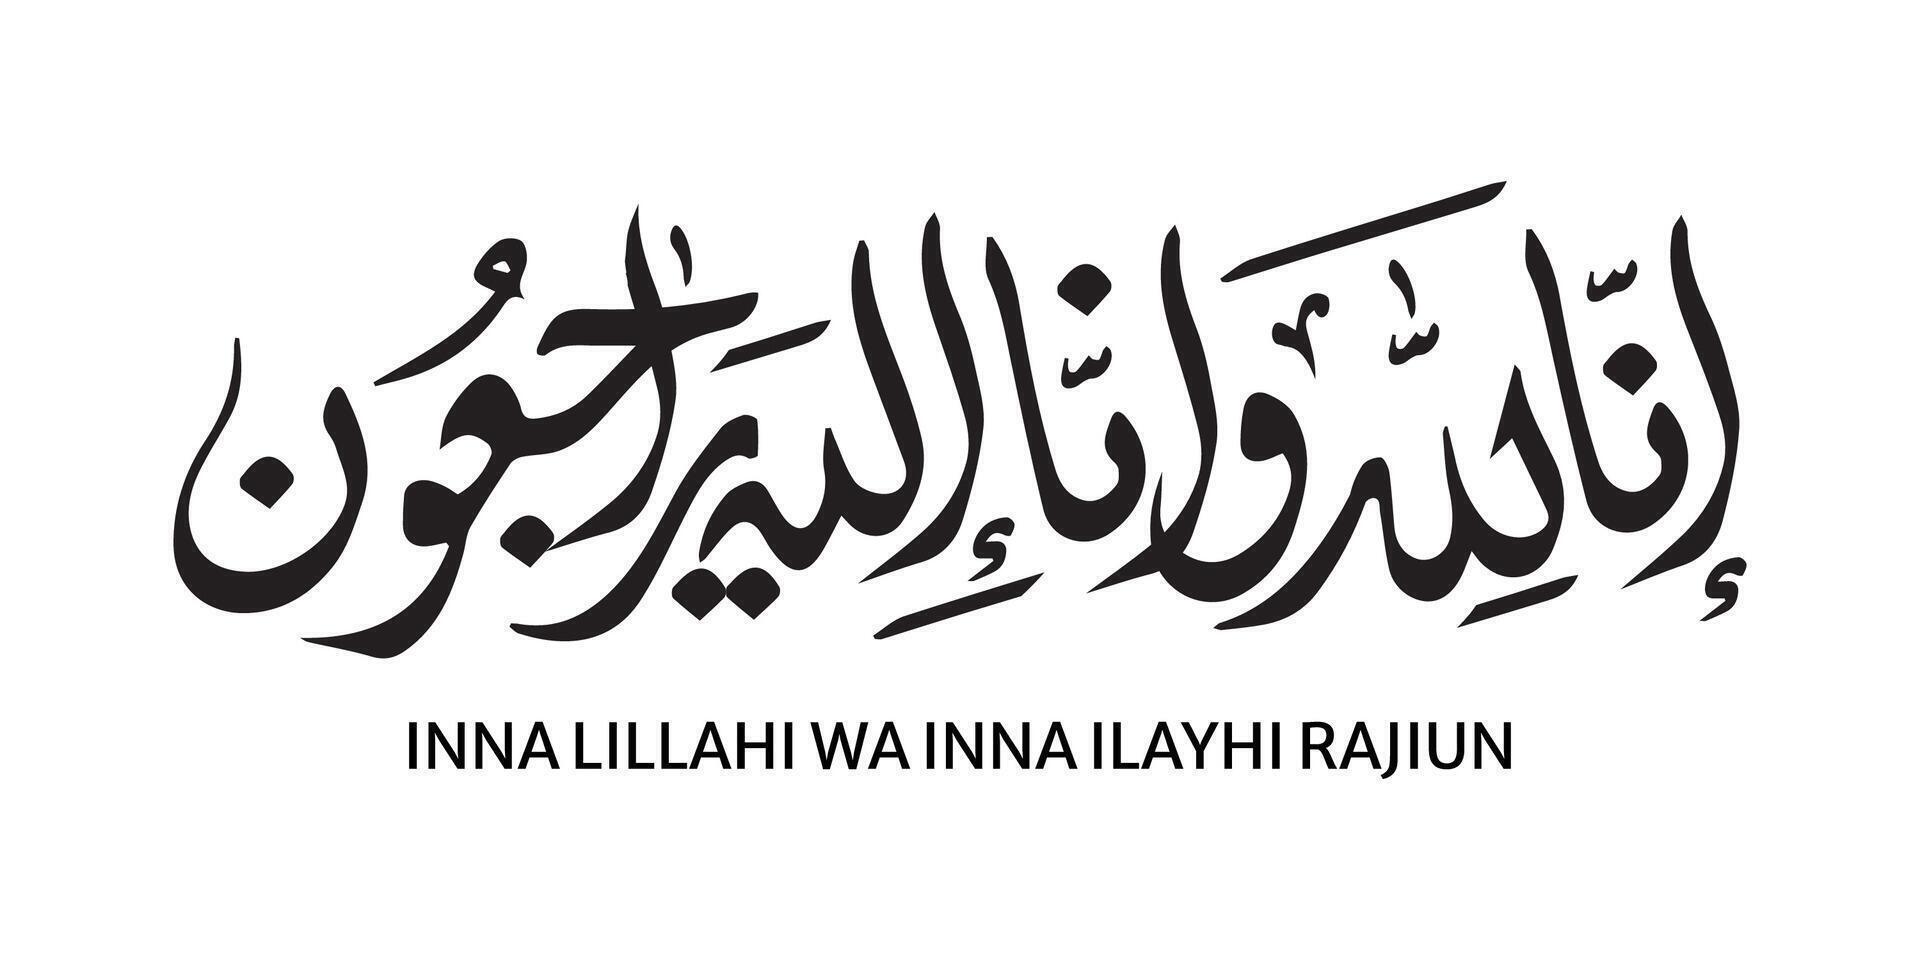 Arabisch schoonschrift van inna lillahi wa inna ilahi raji'un traditioneel en modern Islamitisch kunst voor rust uit in vrede of geslaagd weg vector